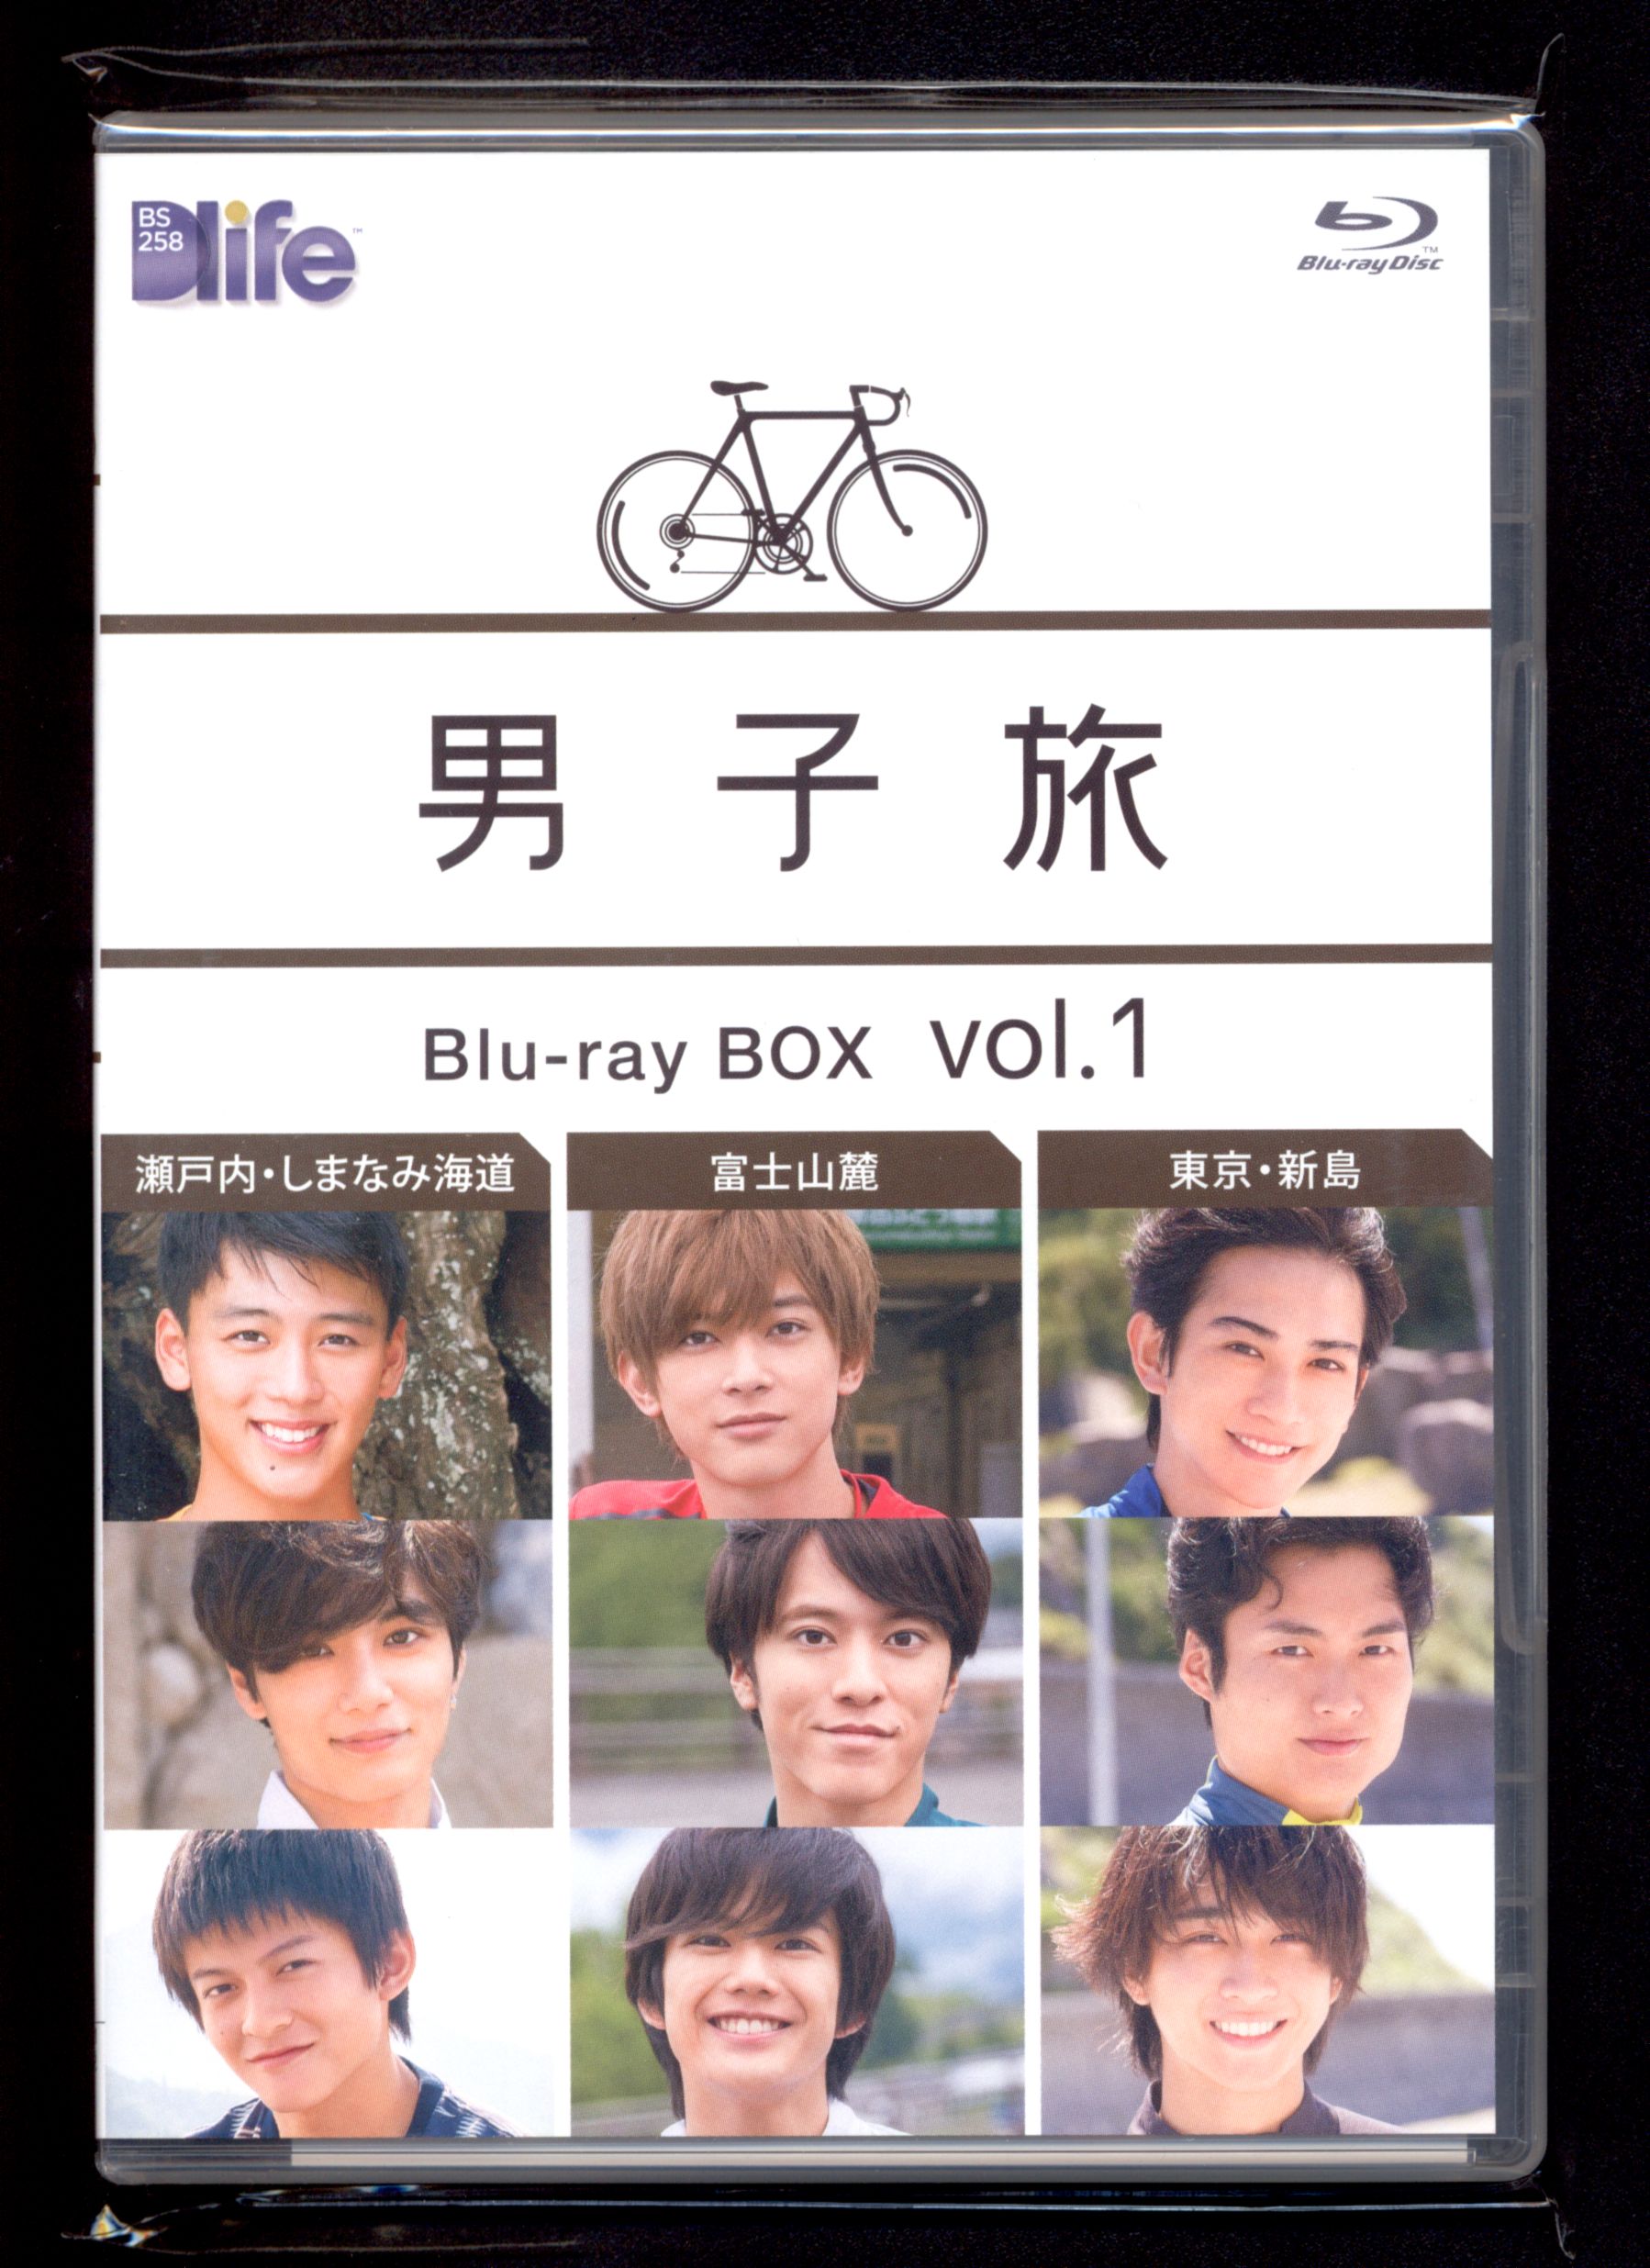 吉沢亮さん 町田啓太さん 竹内涼真さん 男子旅blueray BOX vol.1 